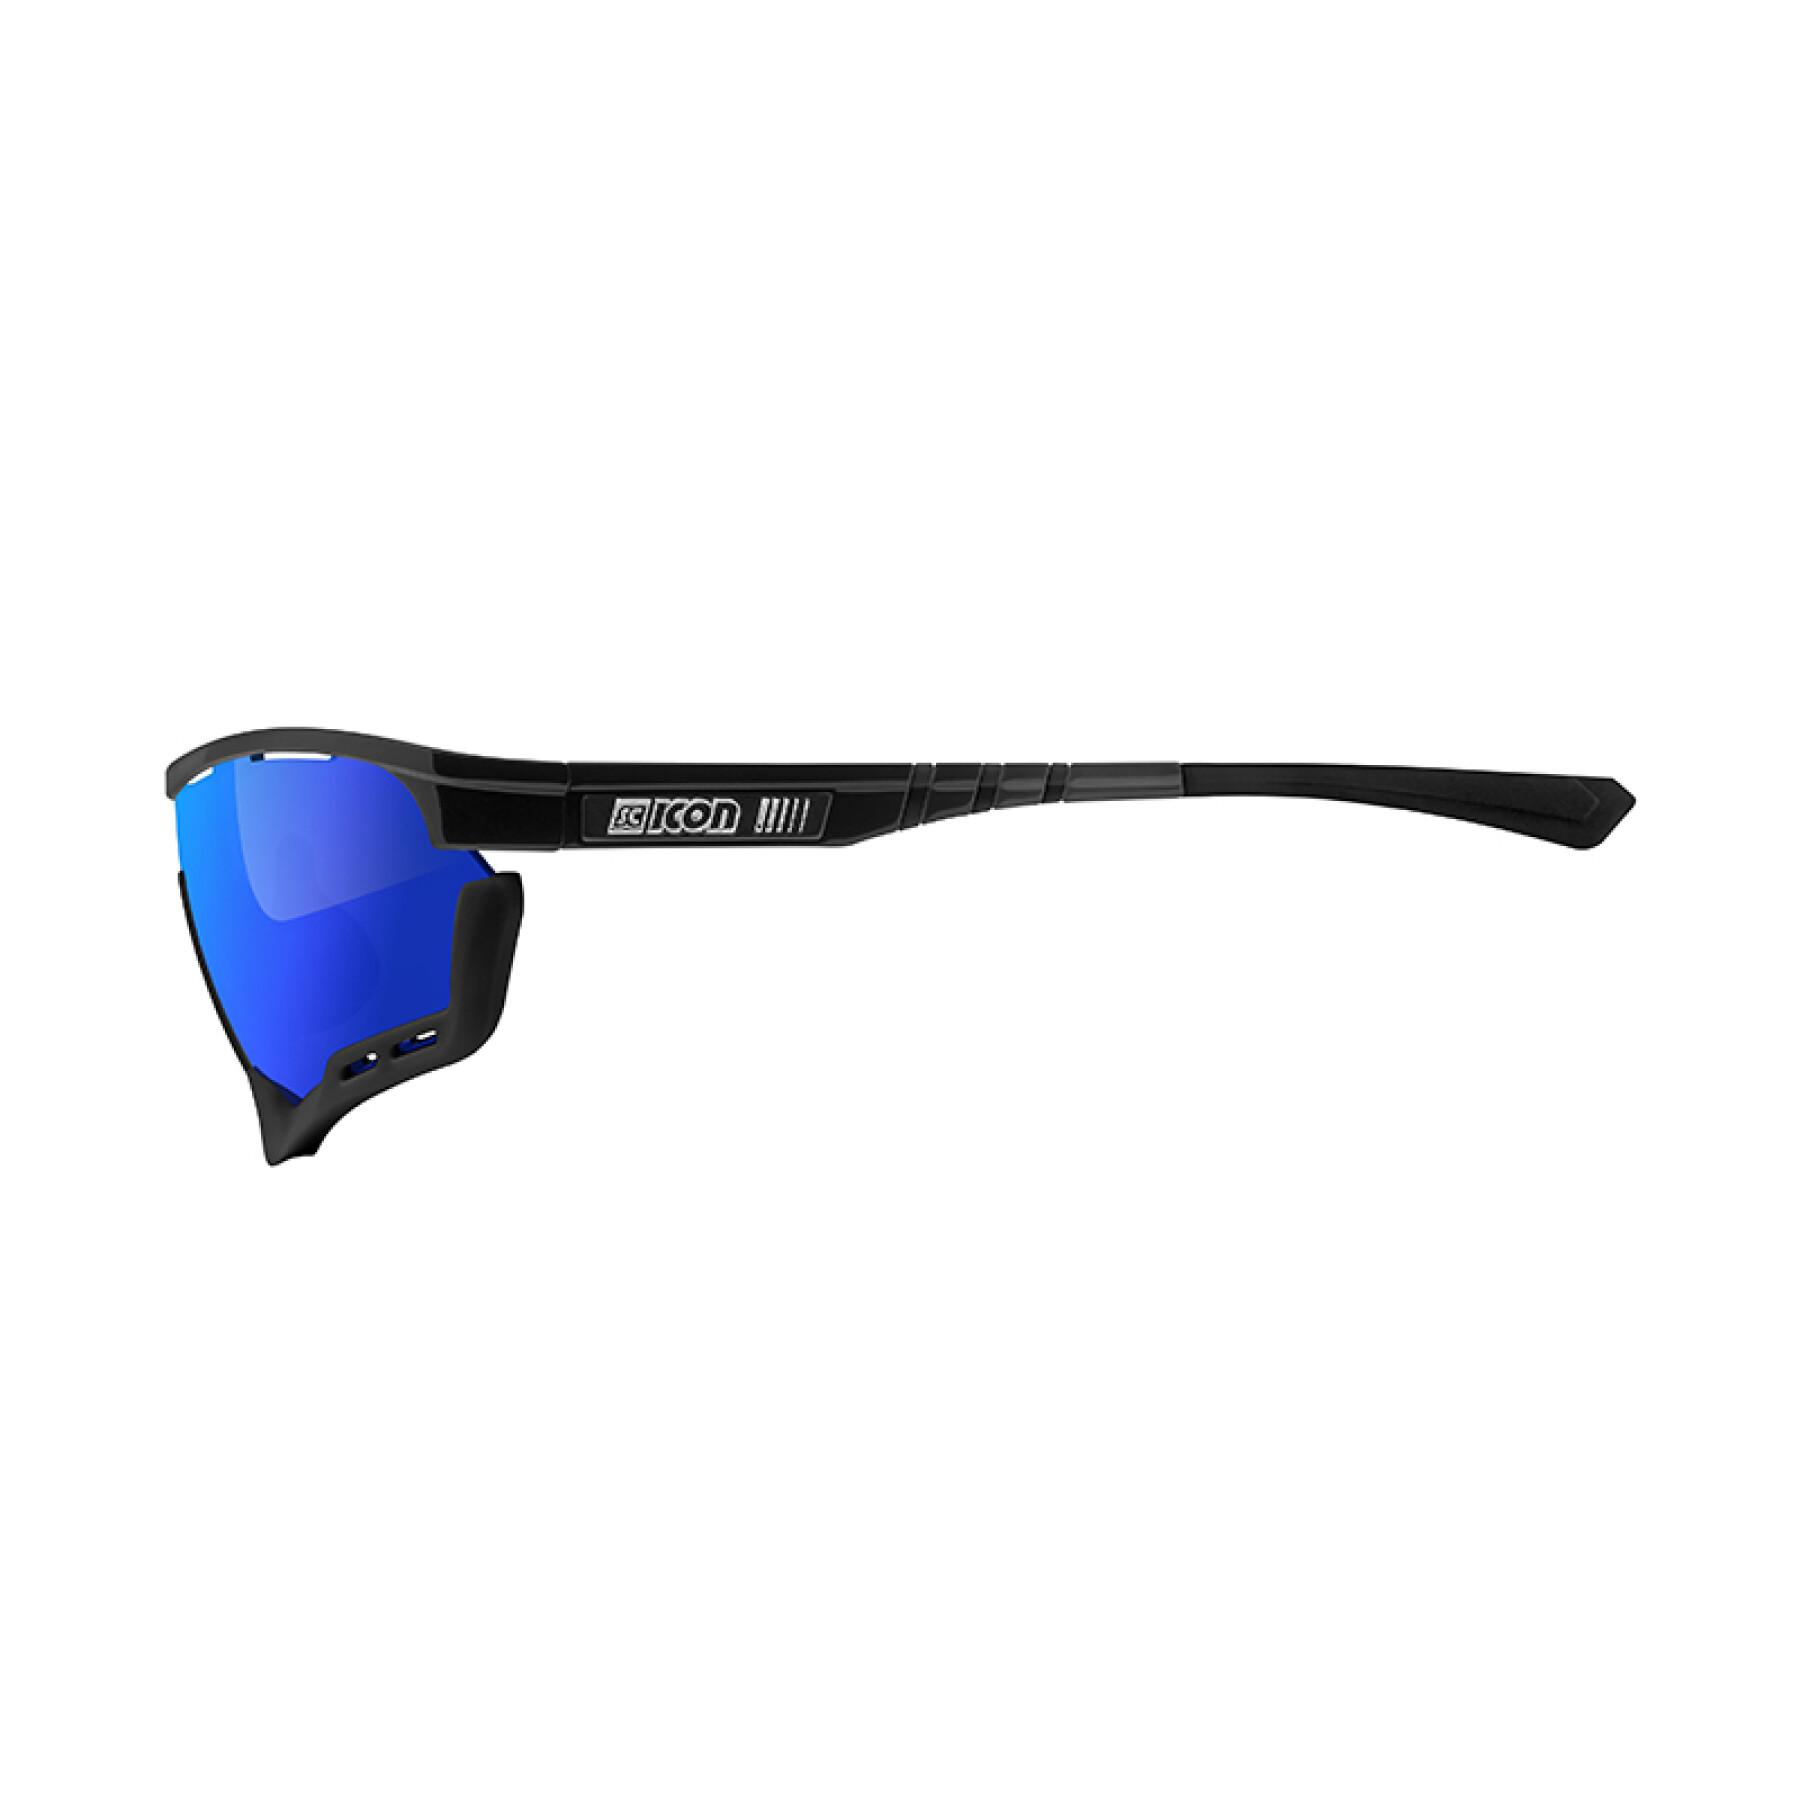 Glasögon Scicon aerotech scnpp verre multi-reflet bleues